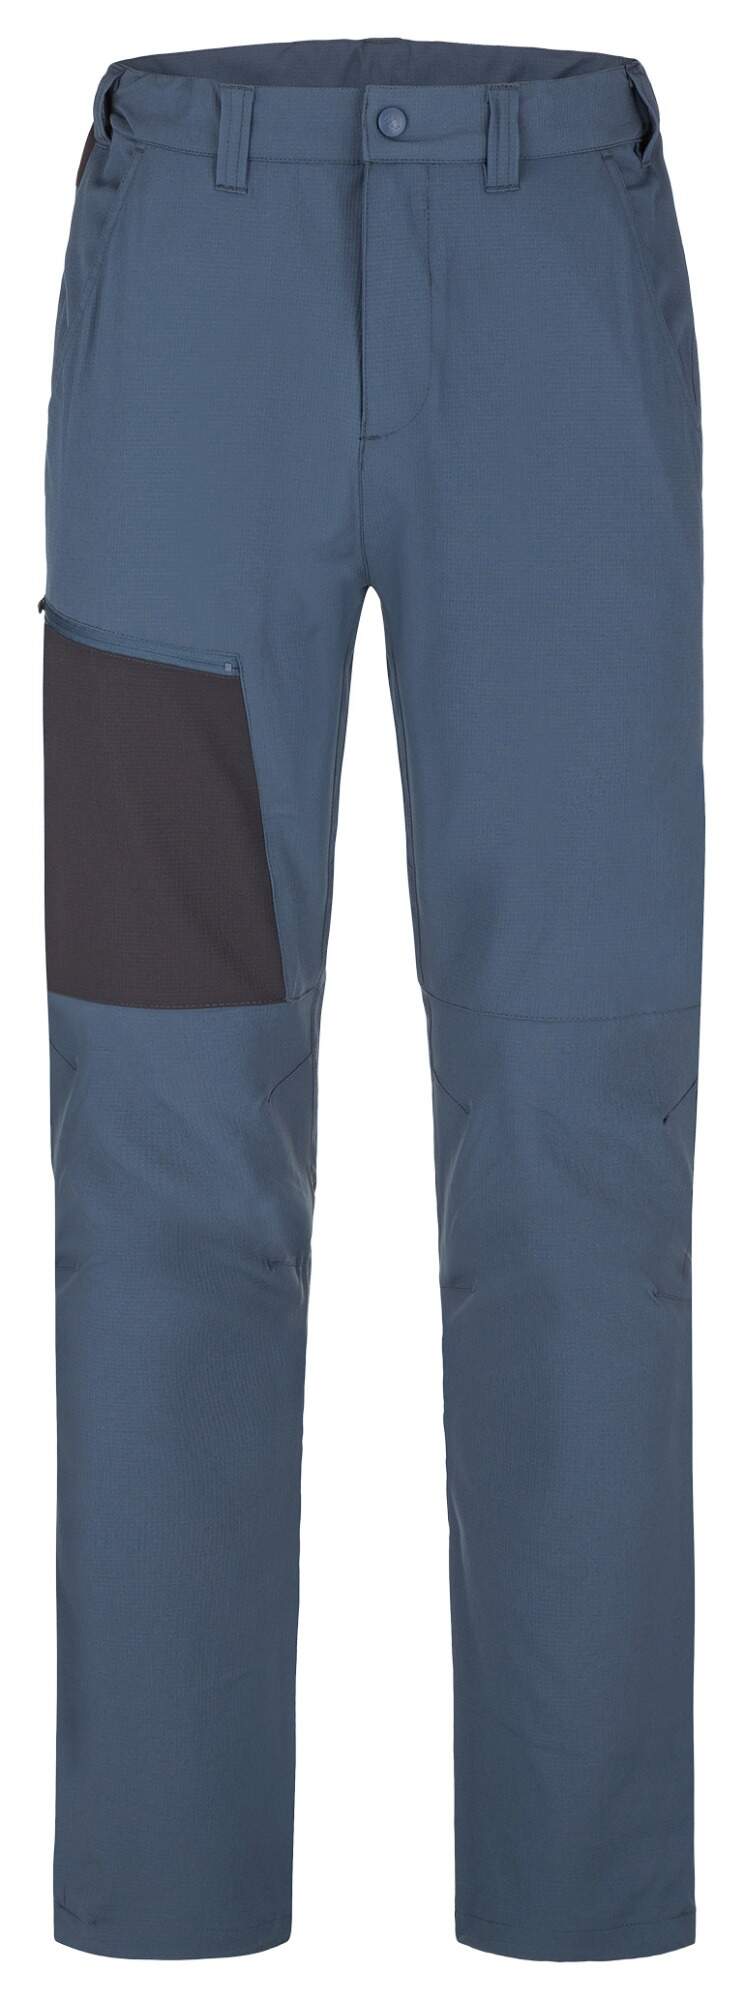 Pánské sportovní kalhoty Loap Uzer modrá M